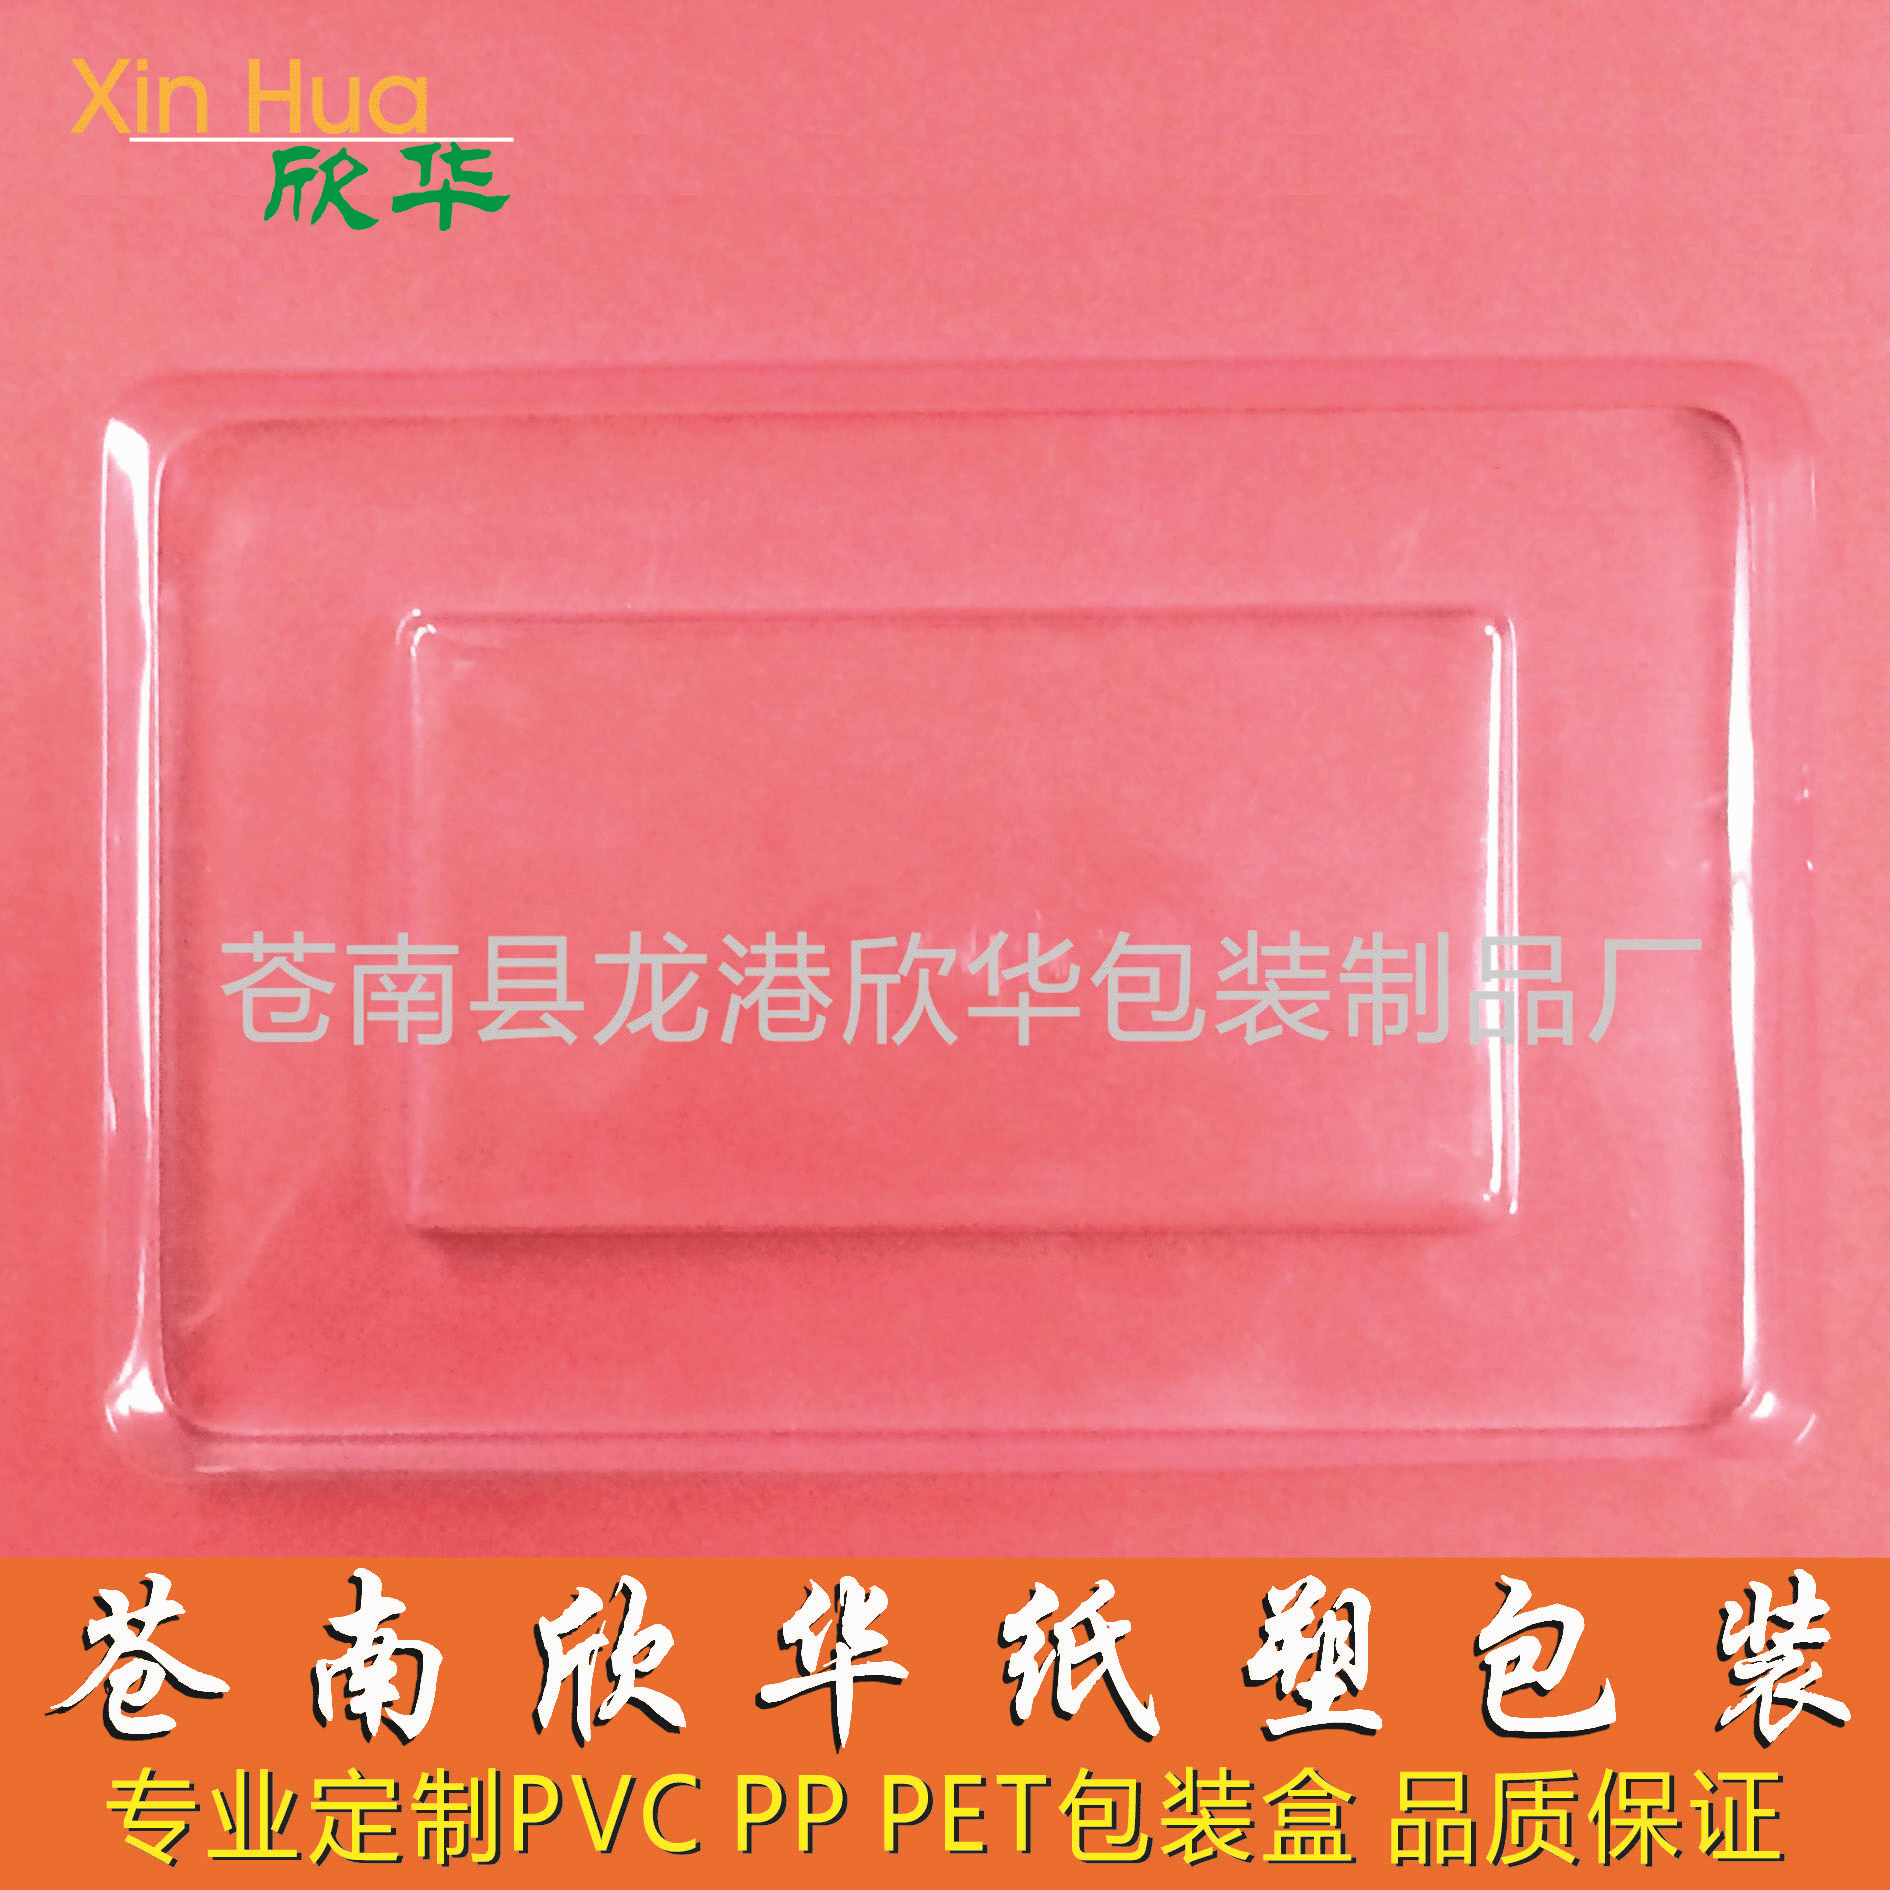 企业采集通用手机壳皮套包装 吸塑胶盒 PVC塑料盒